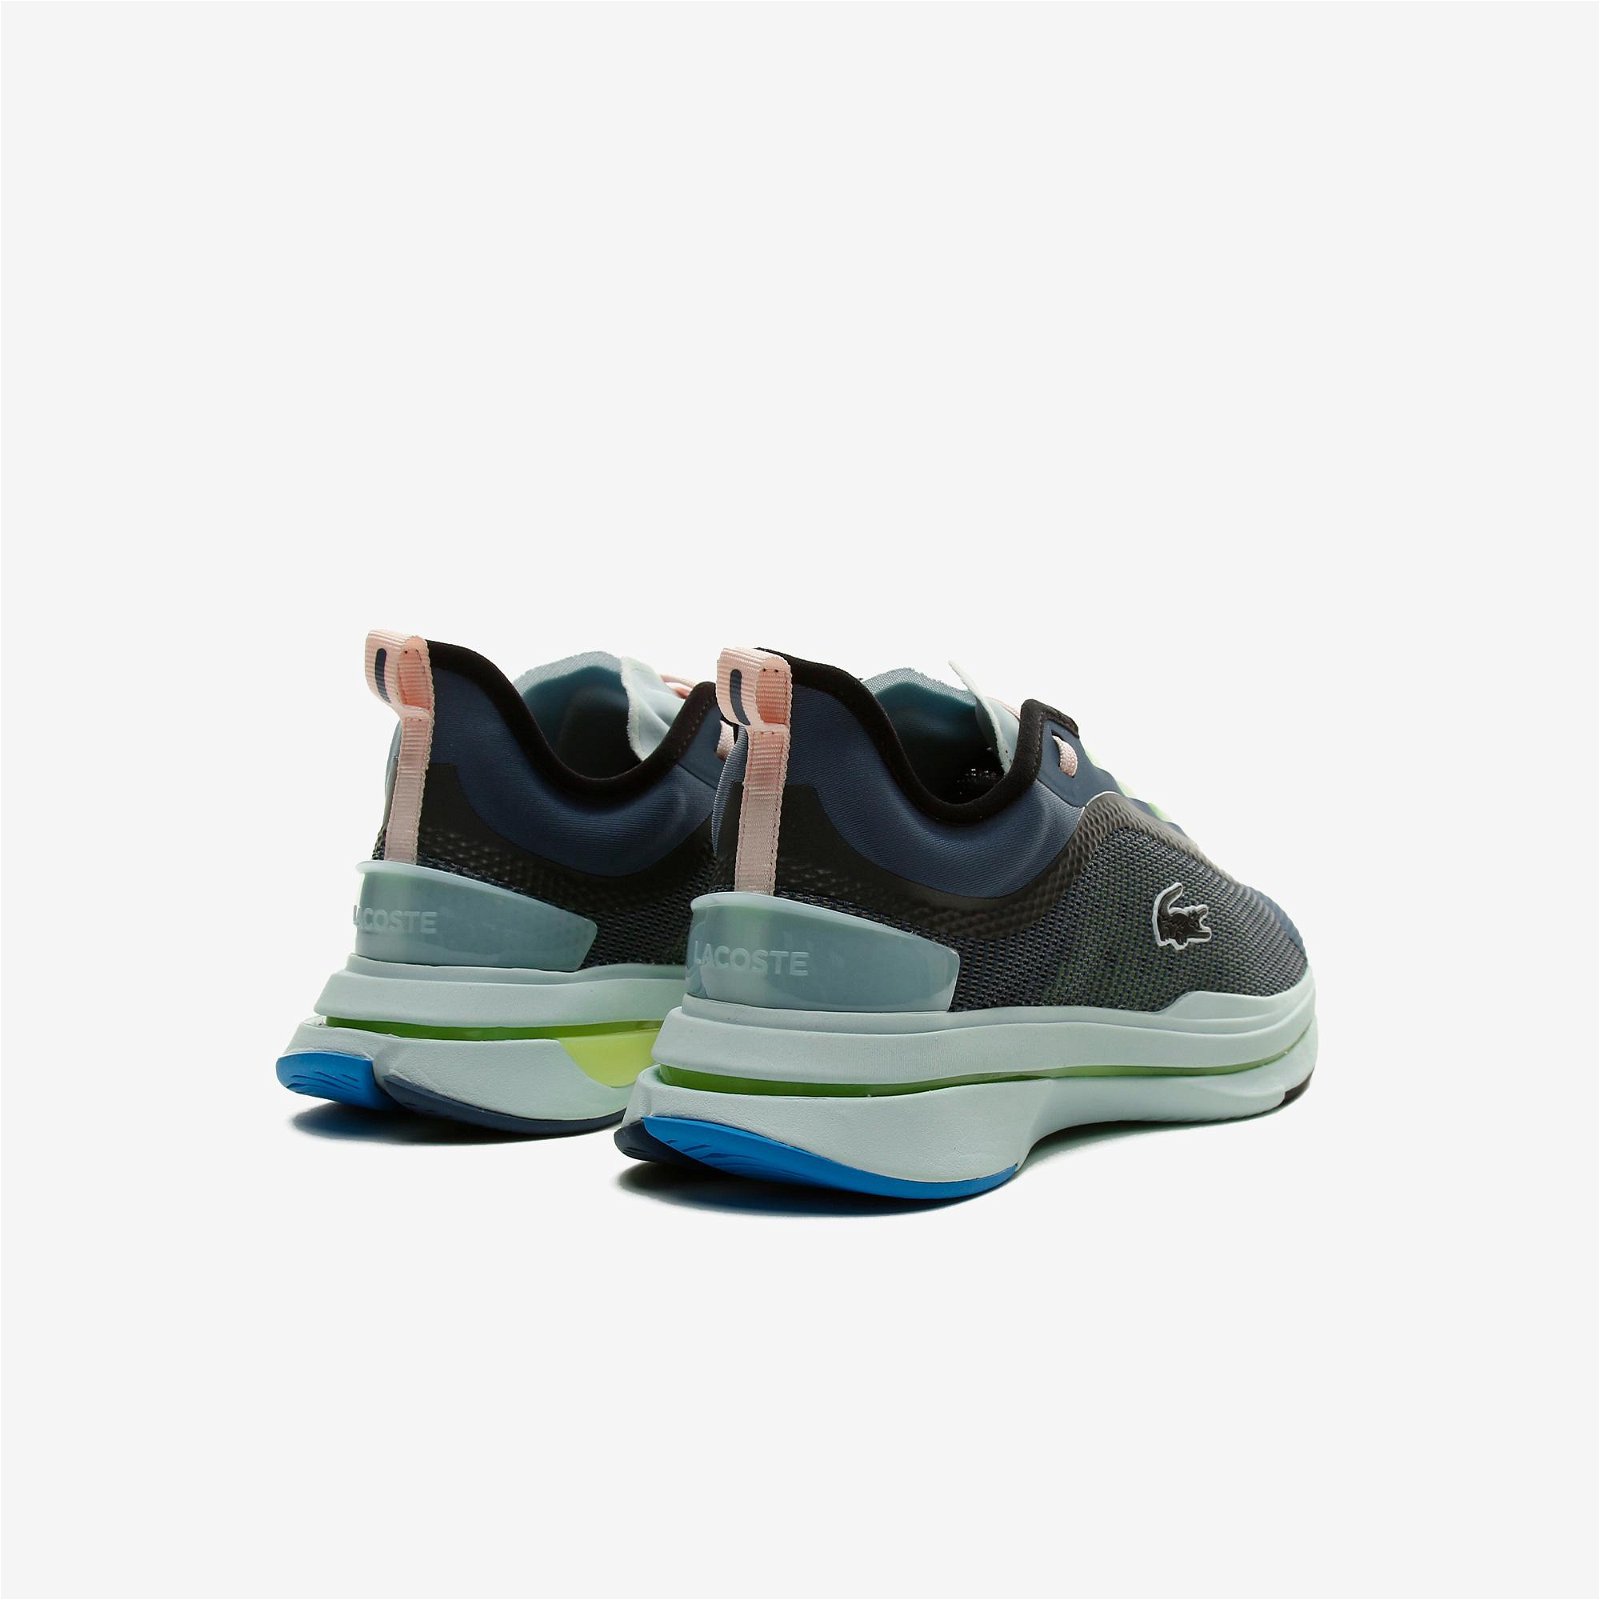 Lacoste Run Spin Ultra 0921 1 Sfa Kadın Siyah - Mavi Sneaker